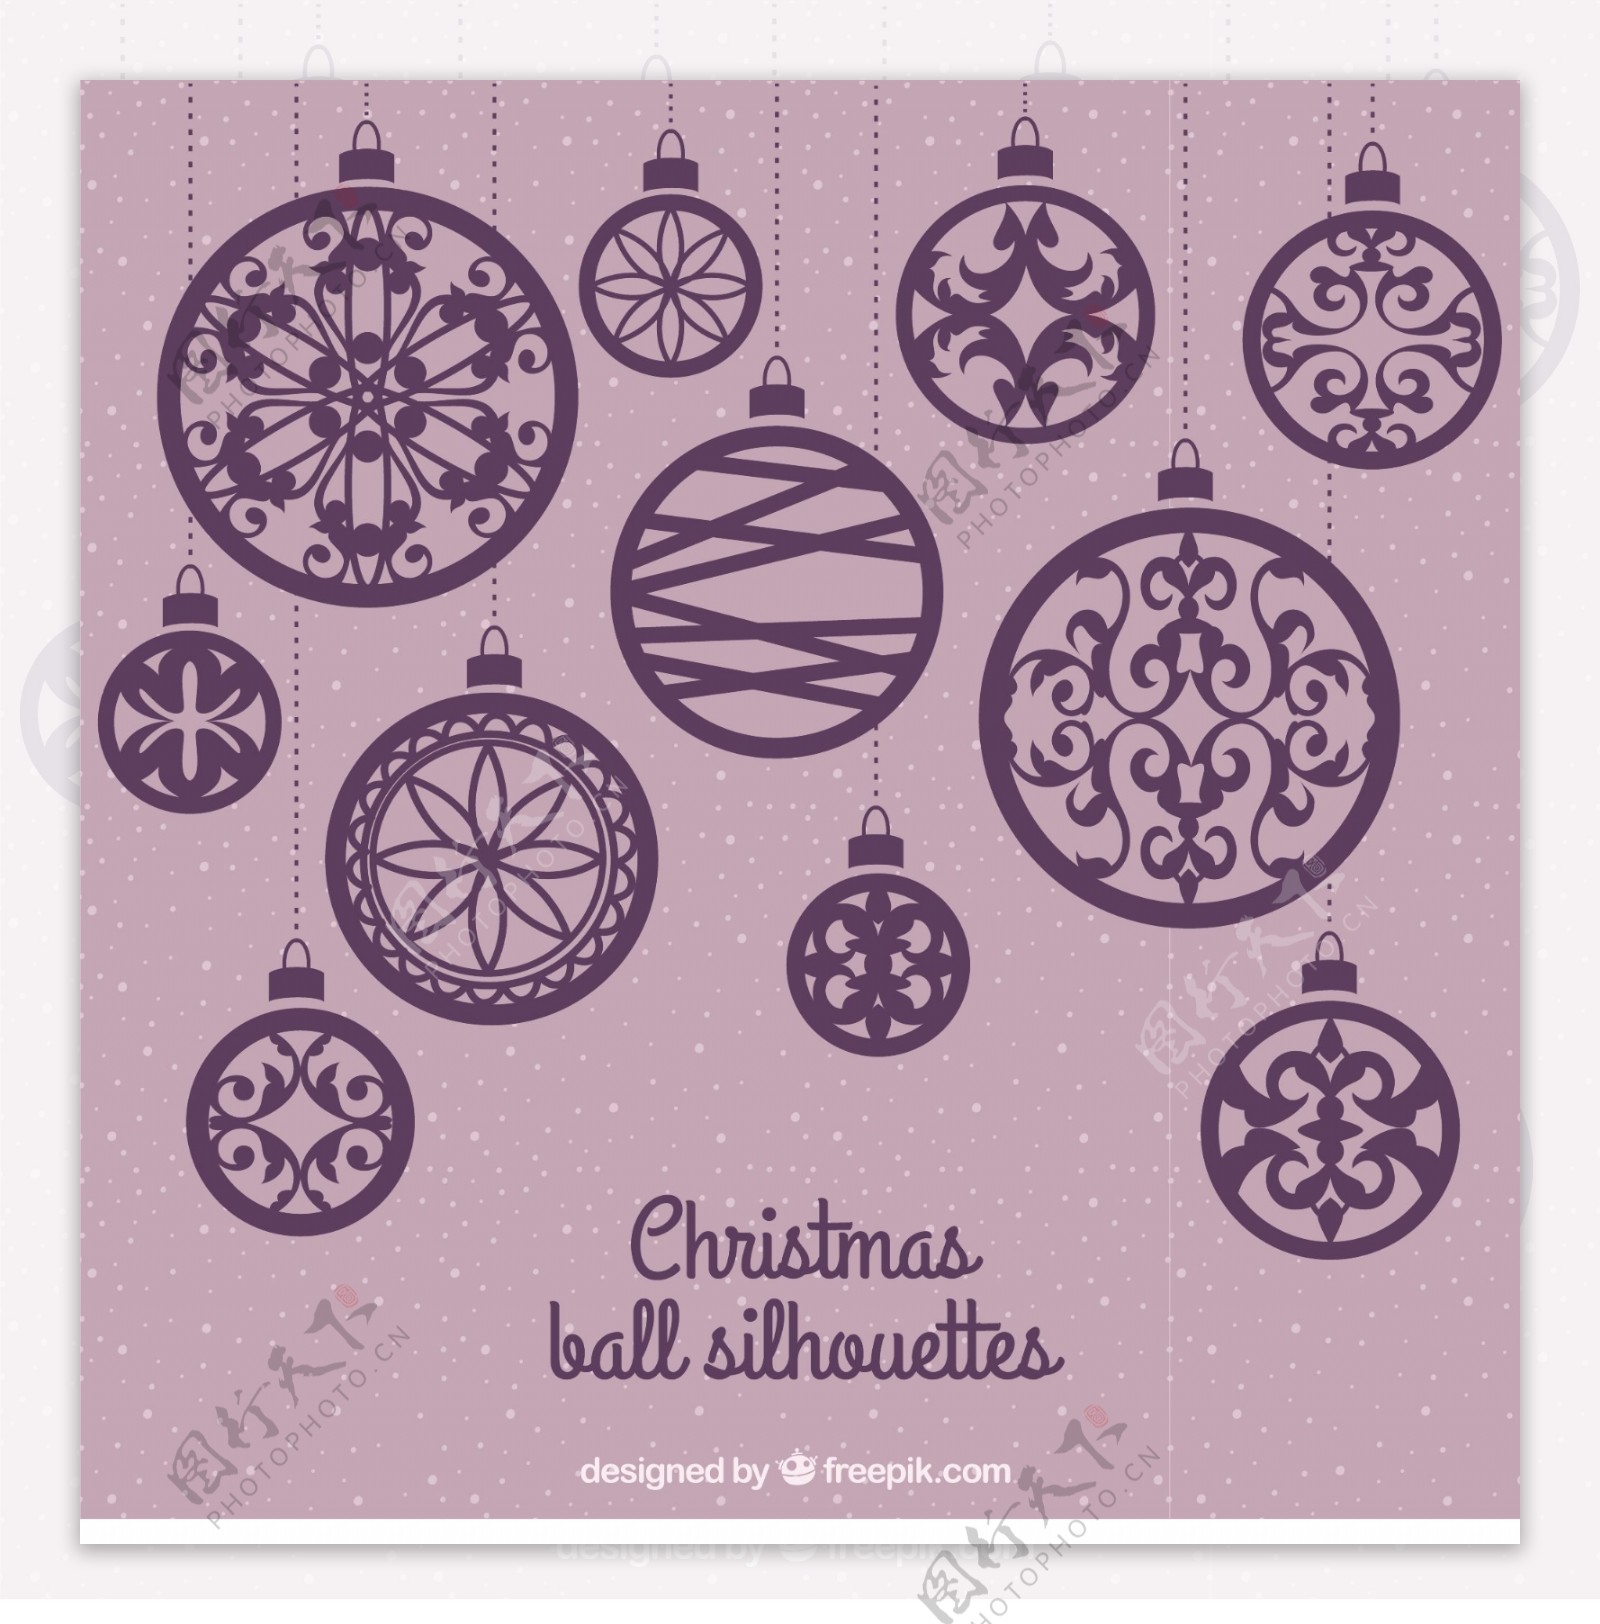 Purplechristmasballssilhouettes